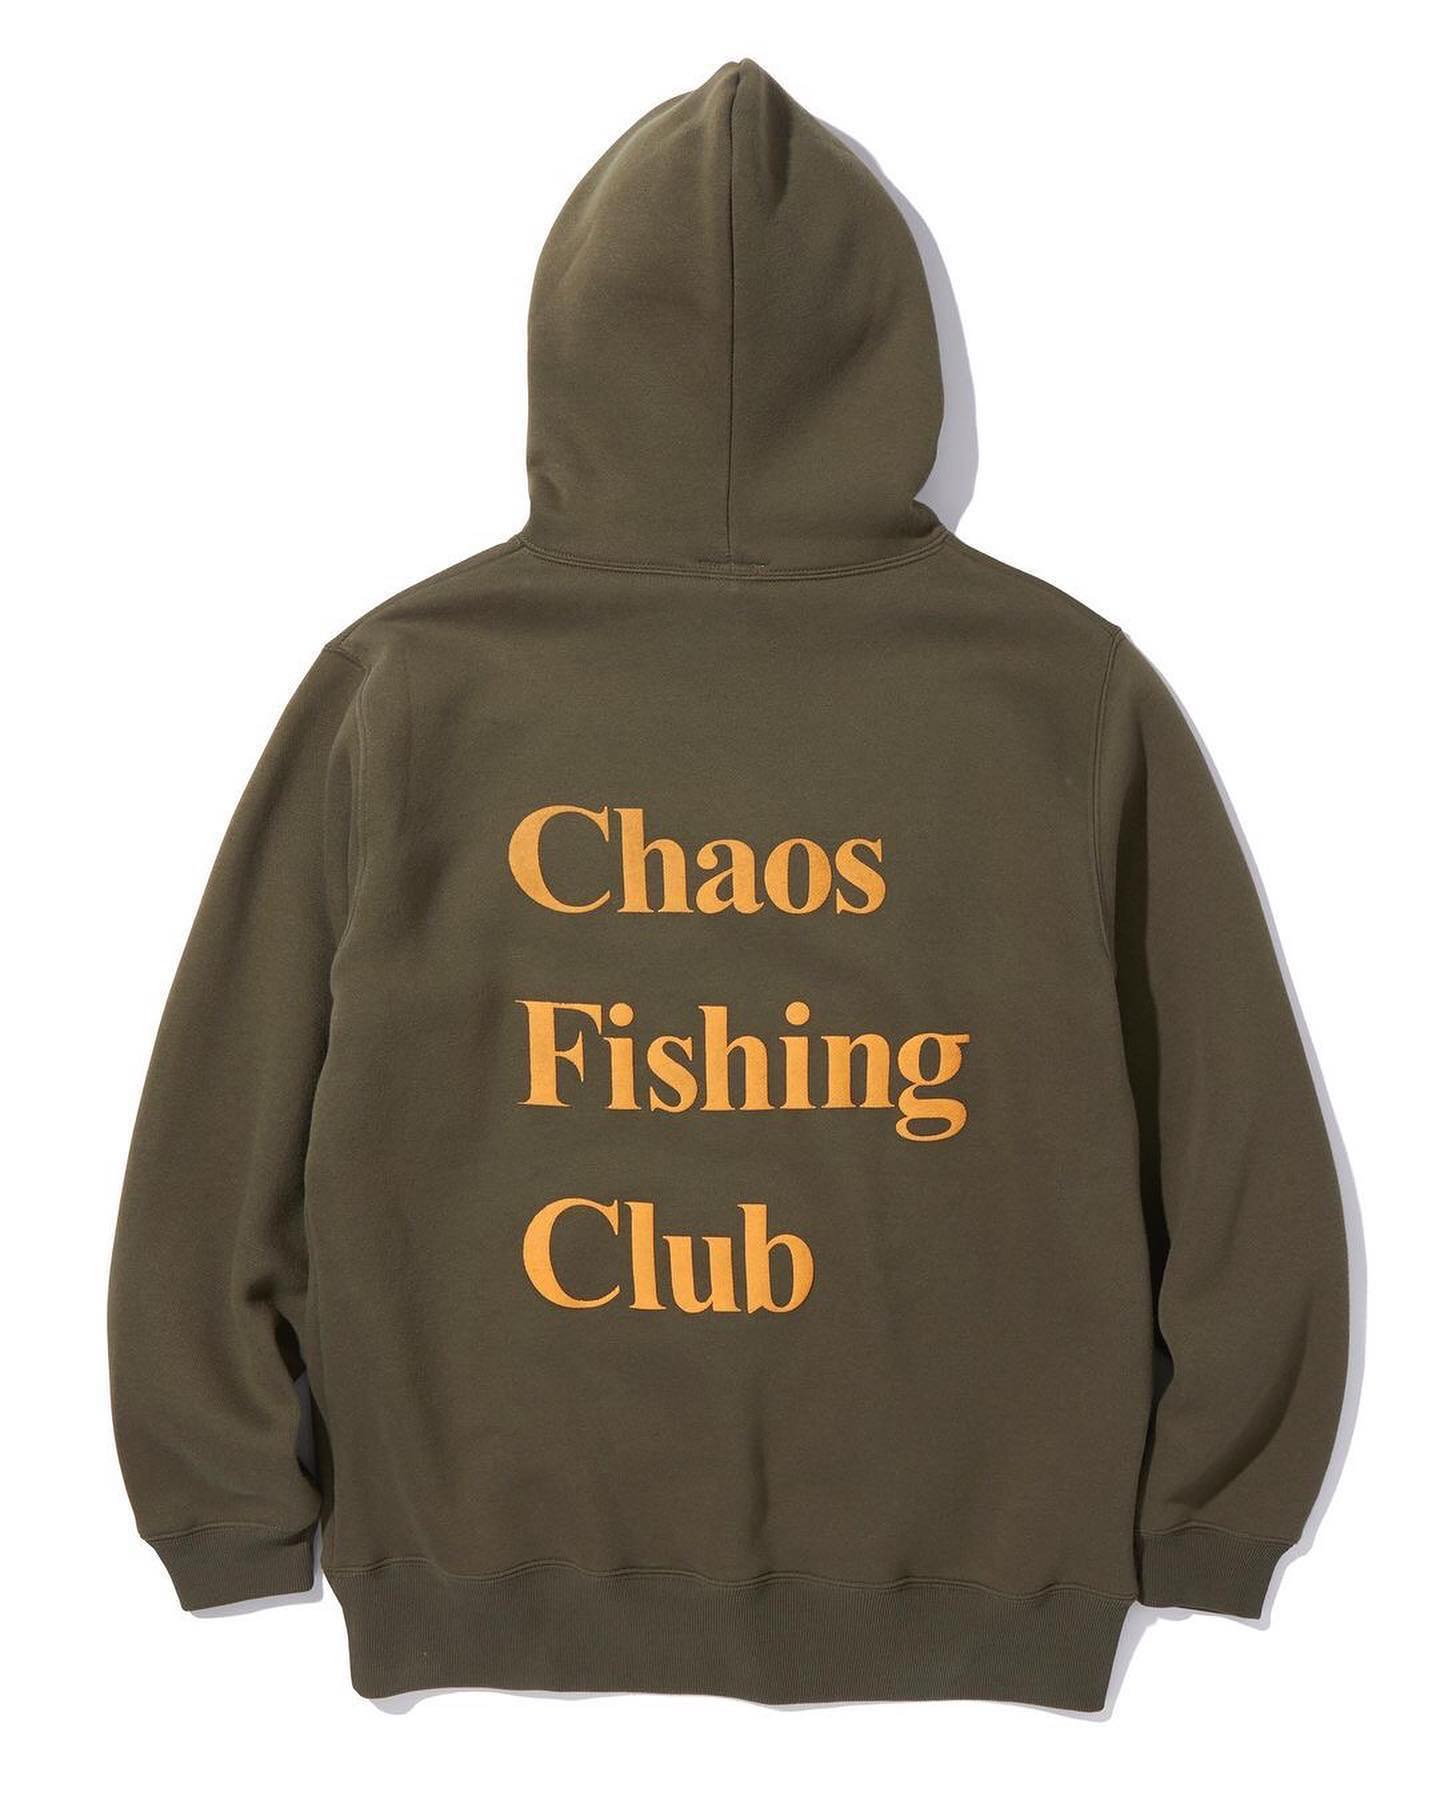 釣りとスケートボードをこよなく愛する謎の集団 @chaos_fishing_club からNewアイテムが到着#てきとうにやっちゃうよ